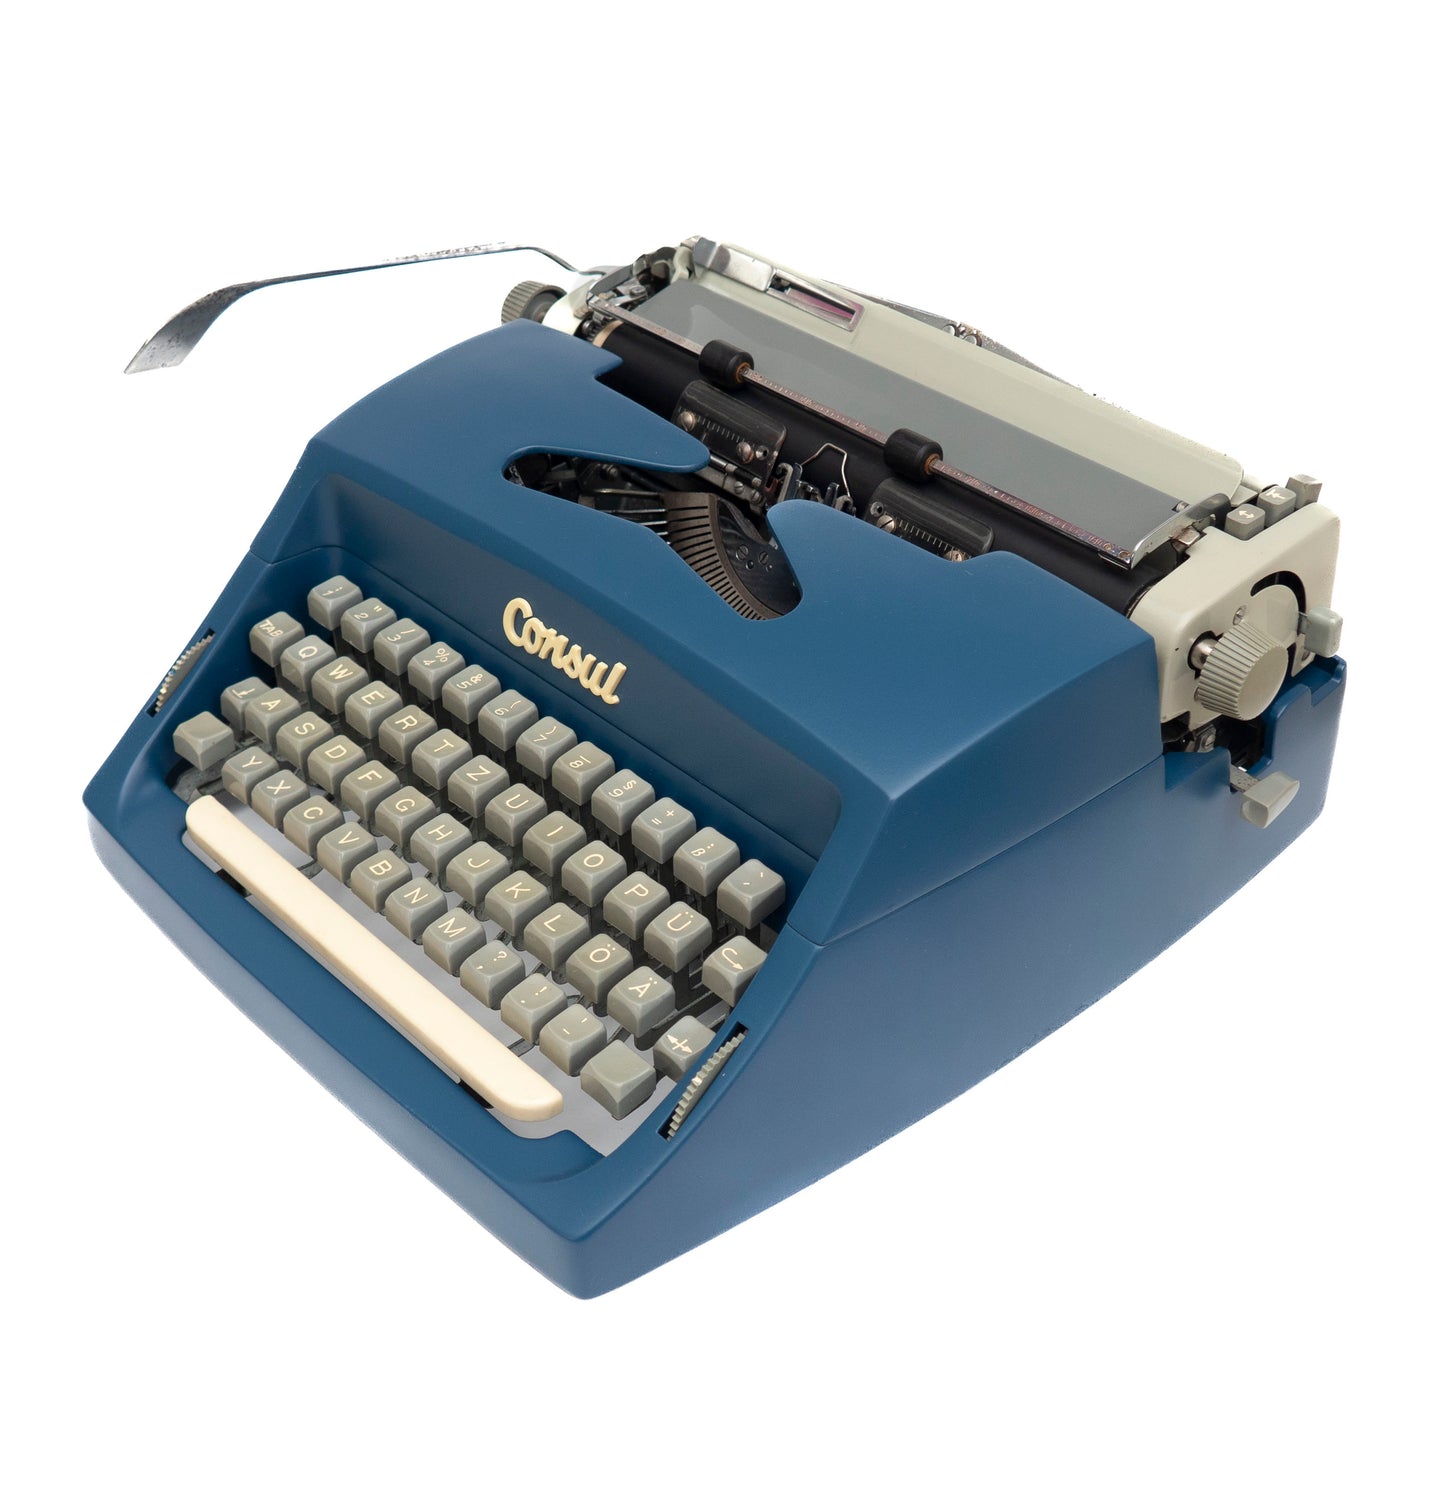 Dunkelblaue Schreibmaschine Consul